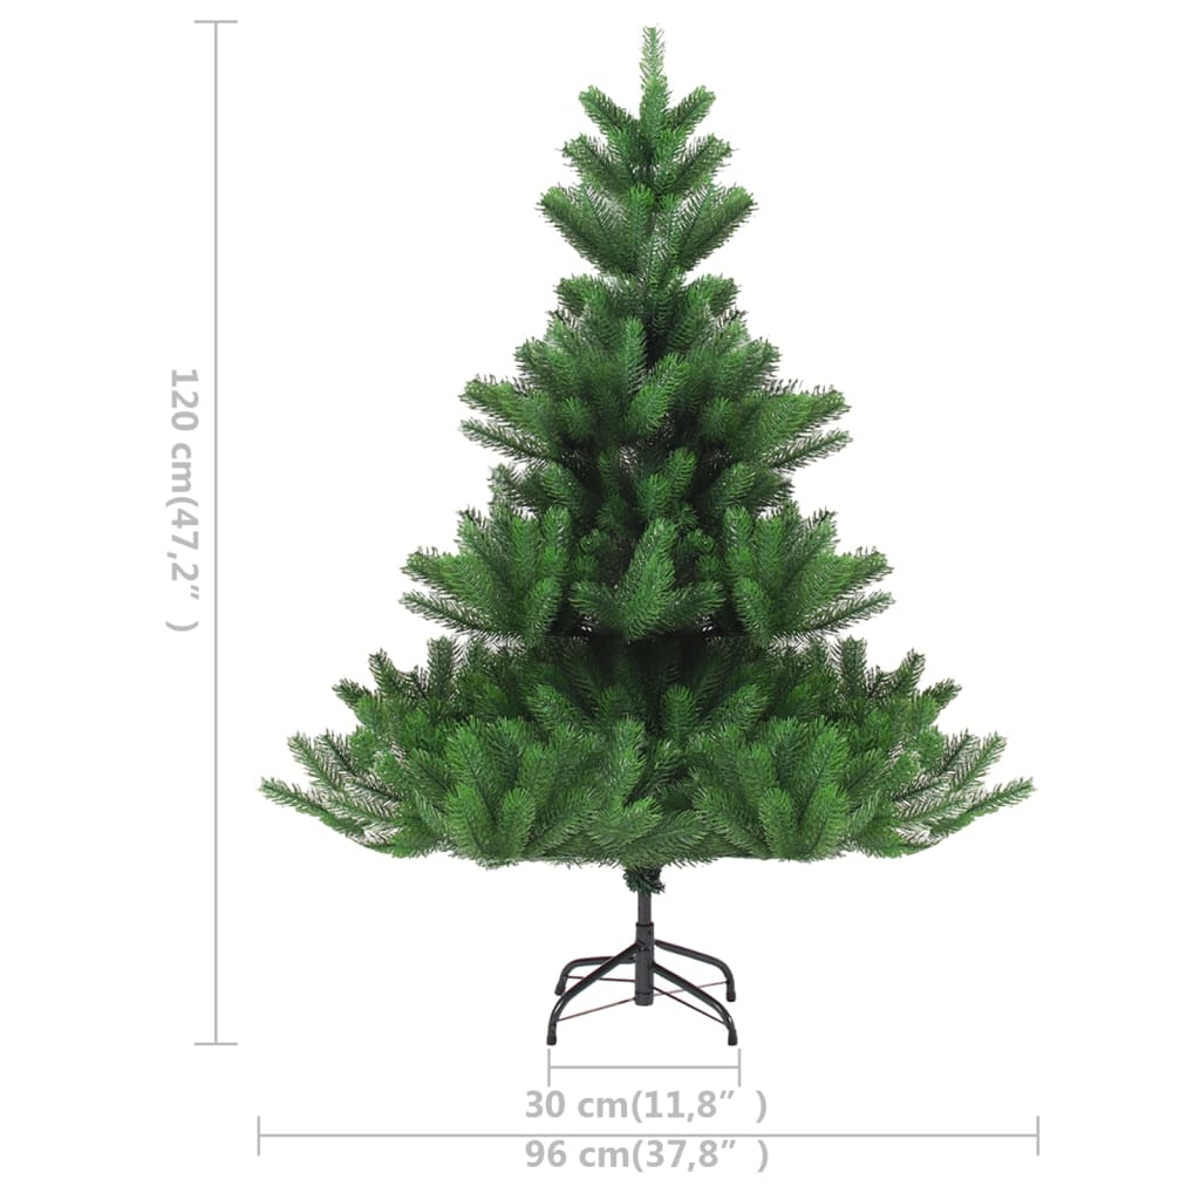 VIDAXL 3077730 Weihnachtsbaum